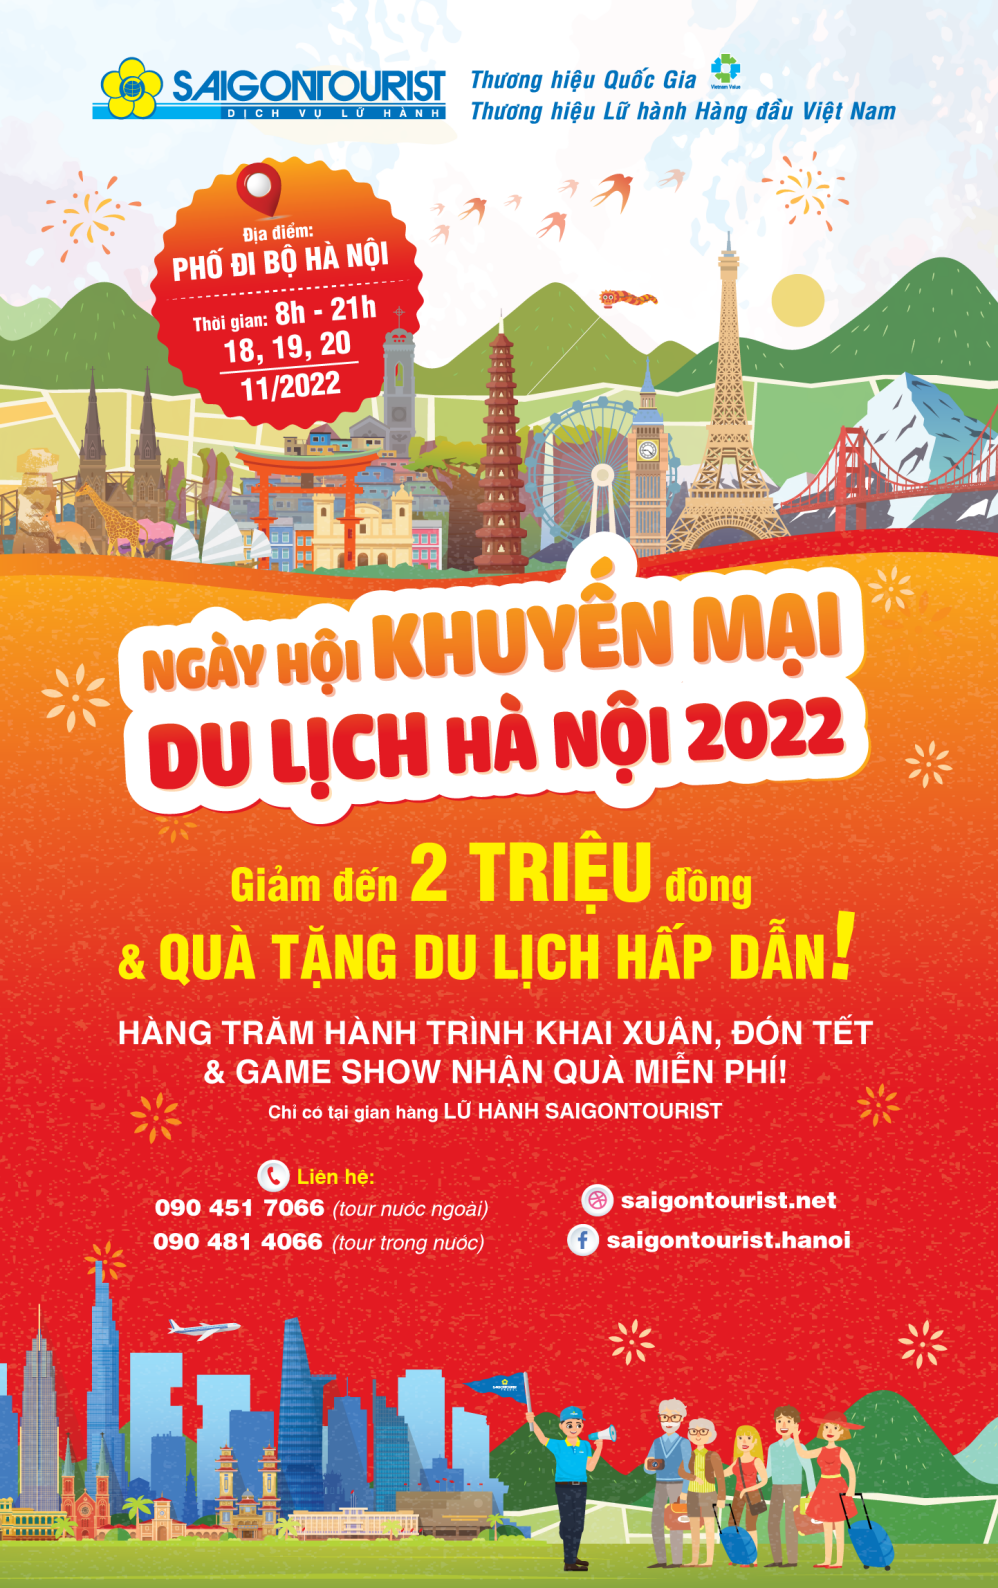 Saigontourist tung nhiều ưu đãi tại Ngày hội Du lịch Hà Nội 2022 - 1